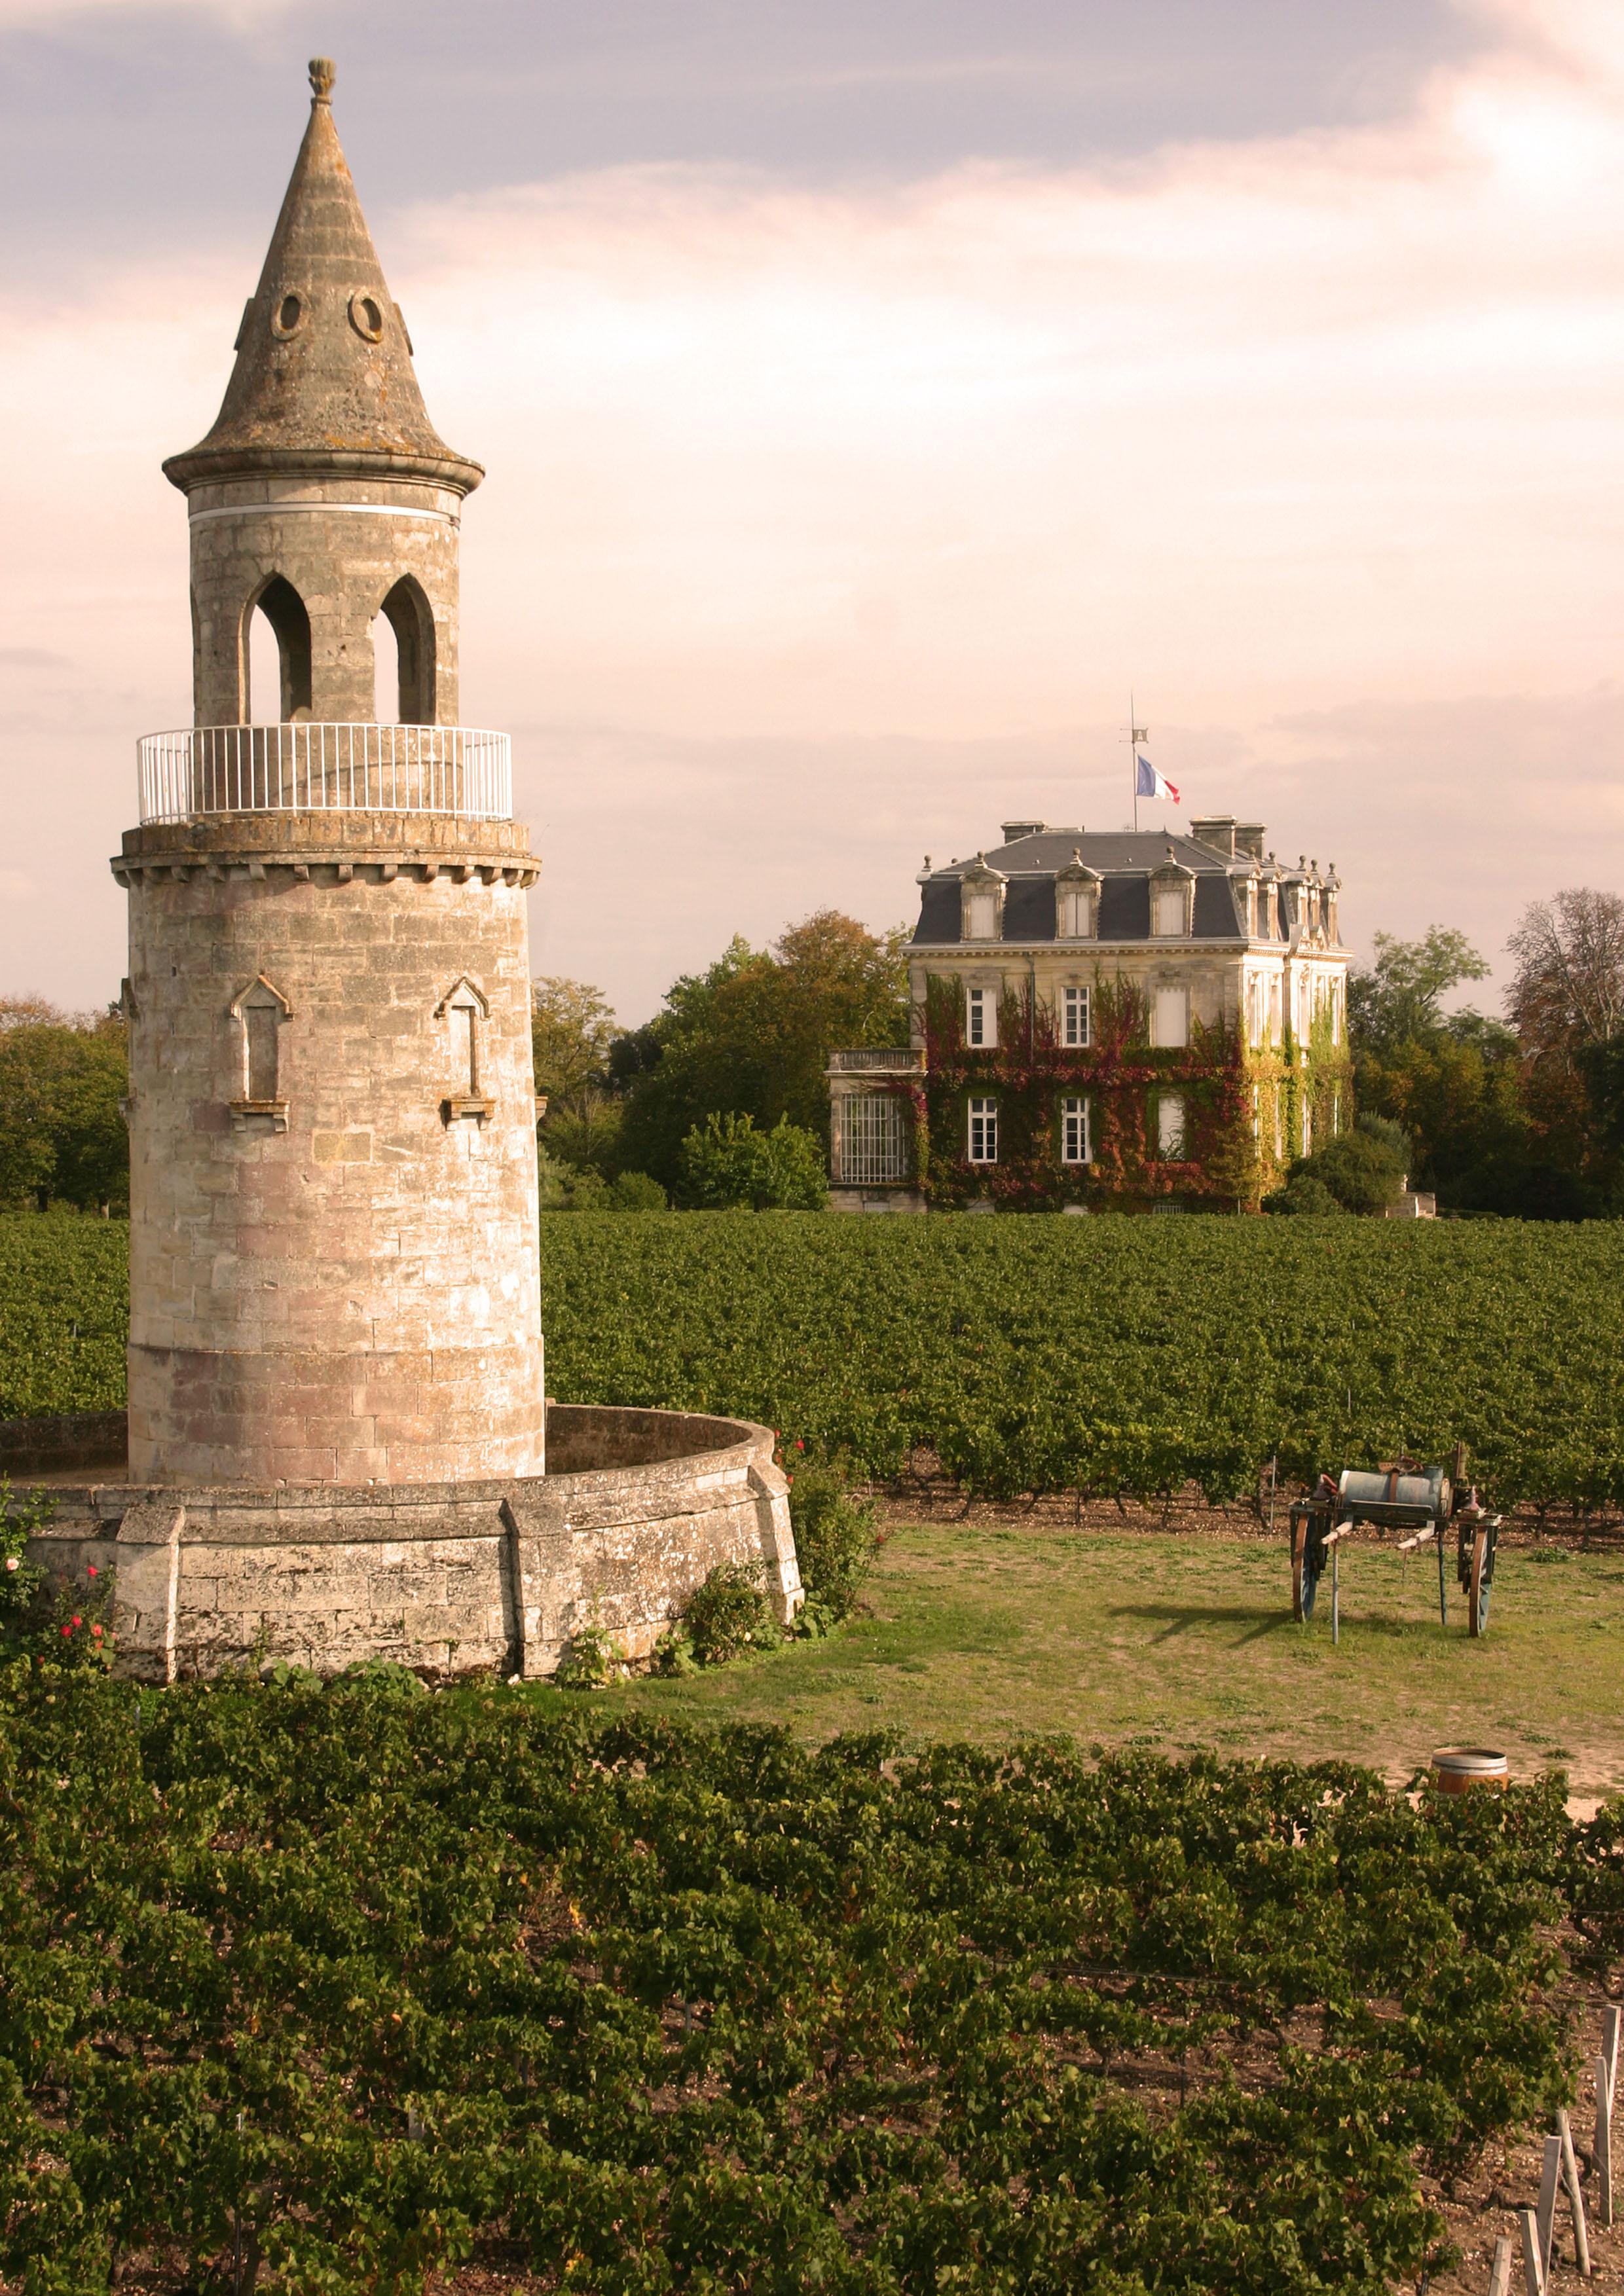  Château La Tour de By